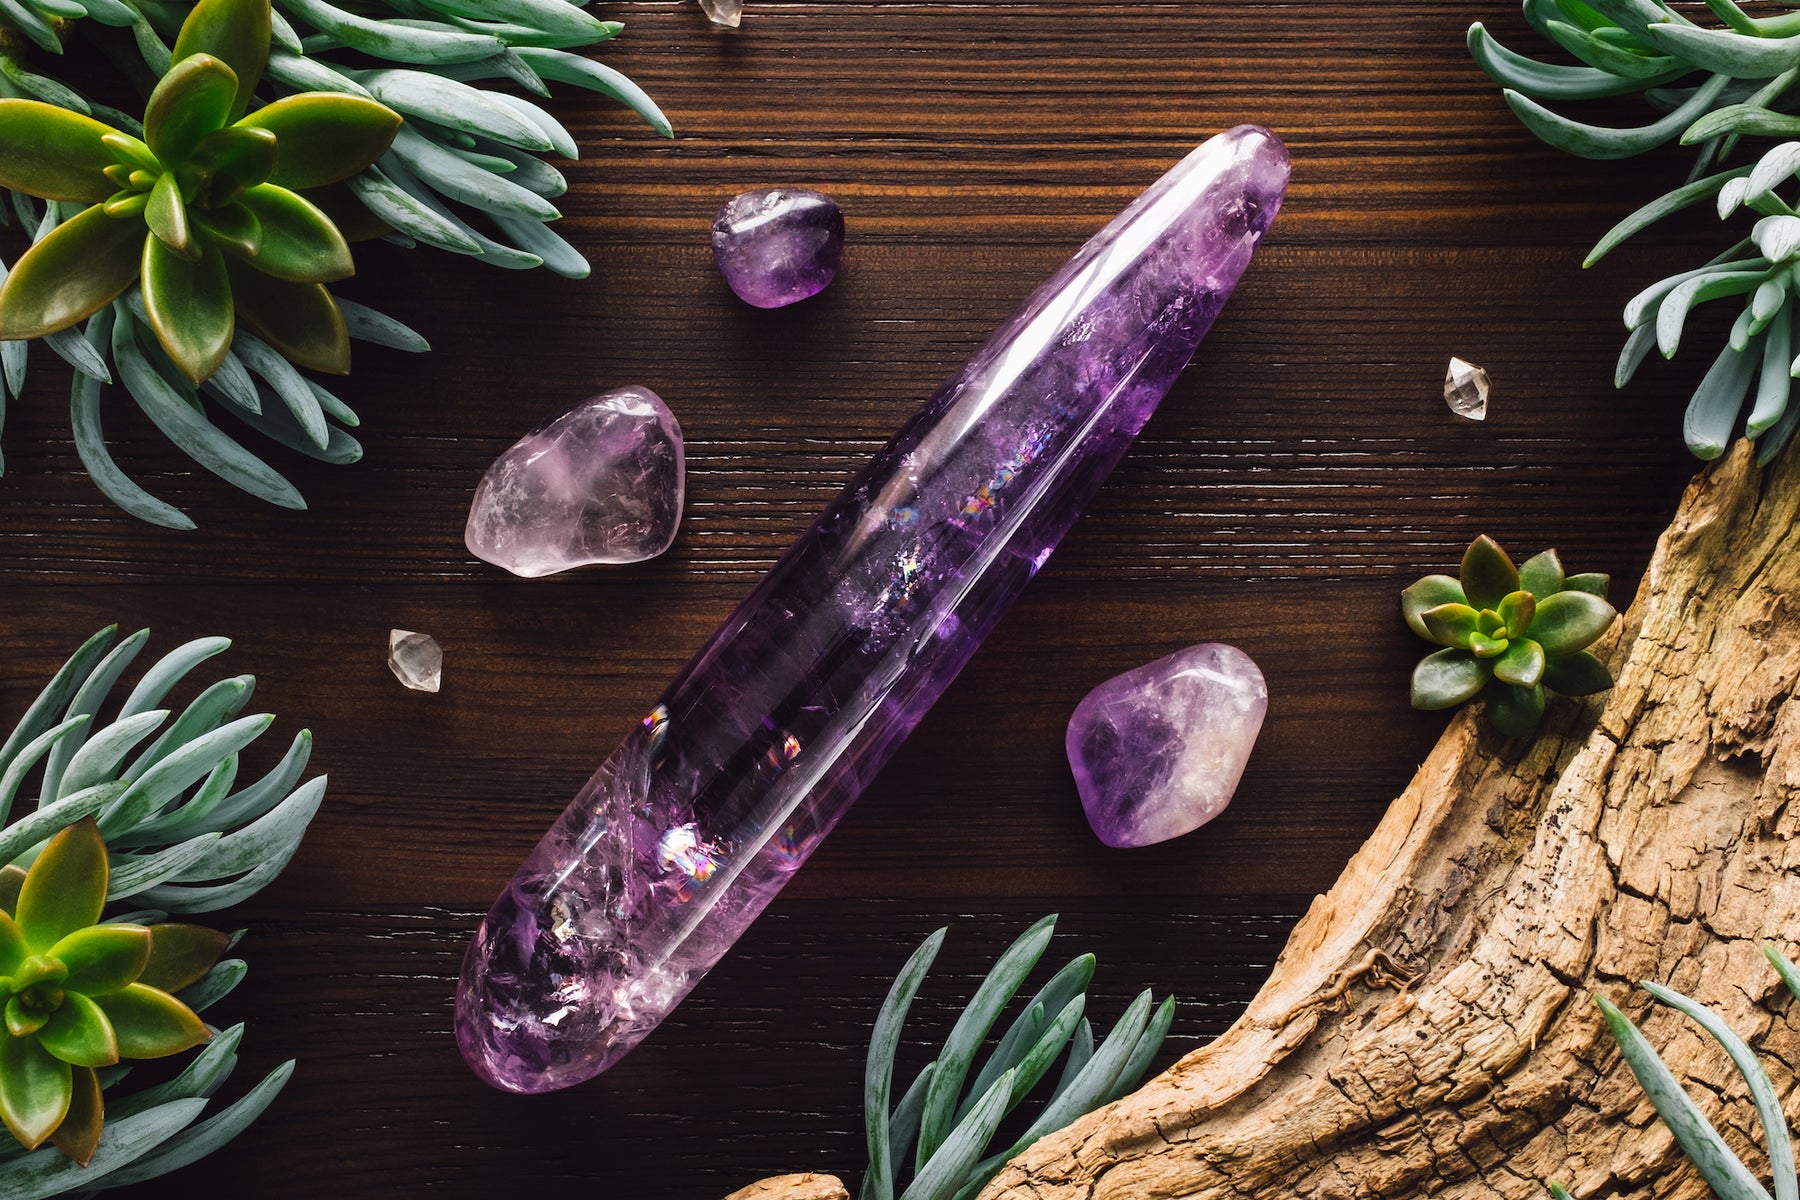 Stunning purple mystical yoni wand amethyst crystal